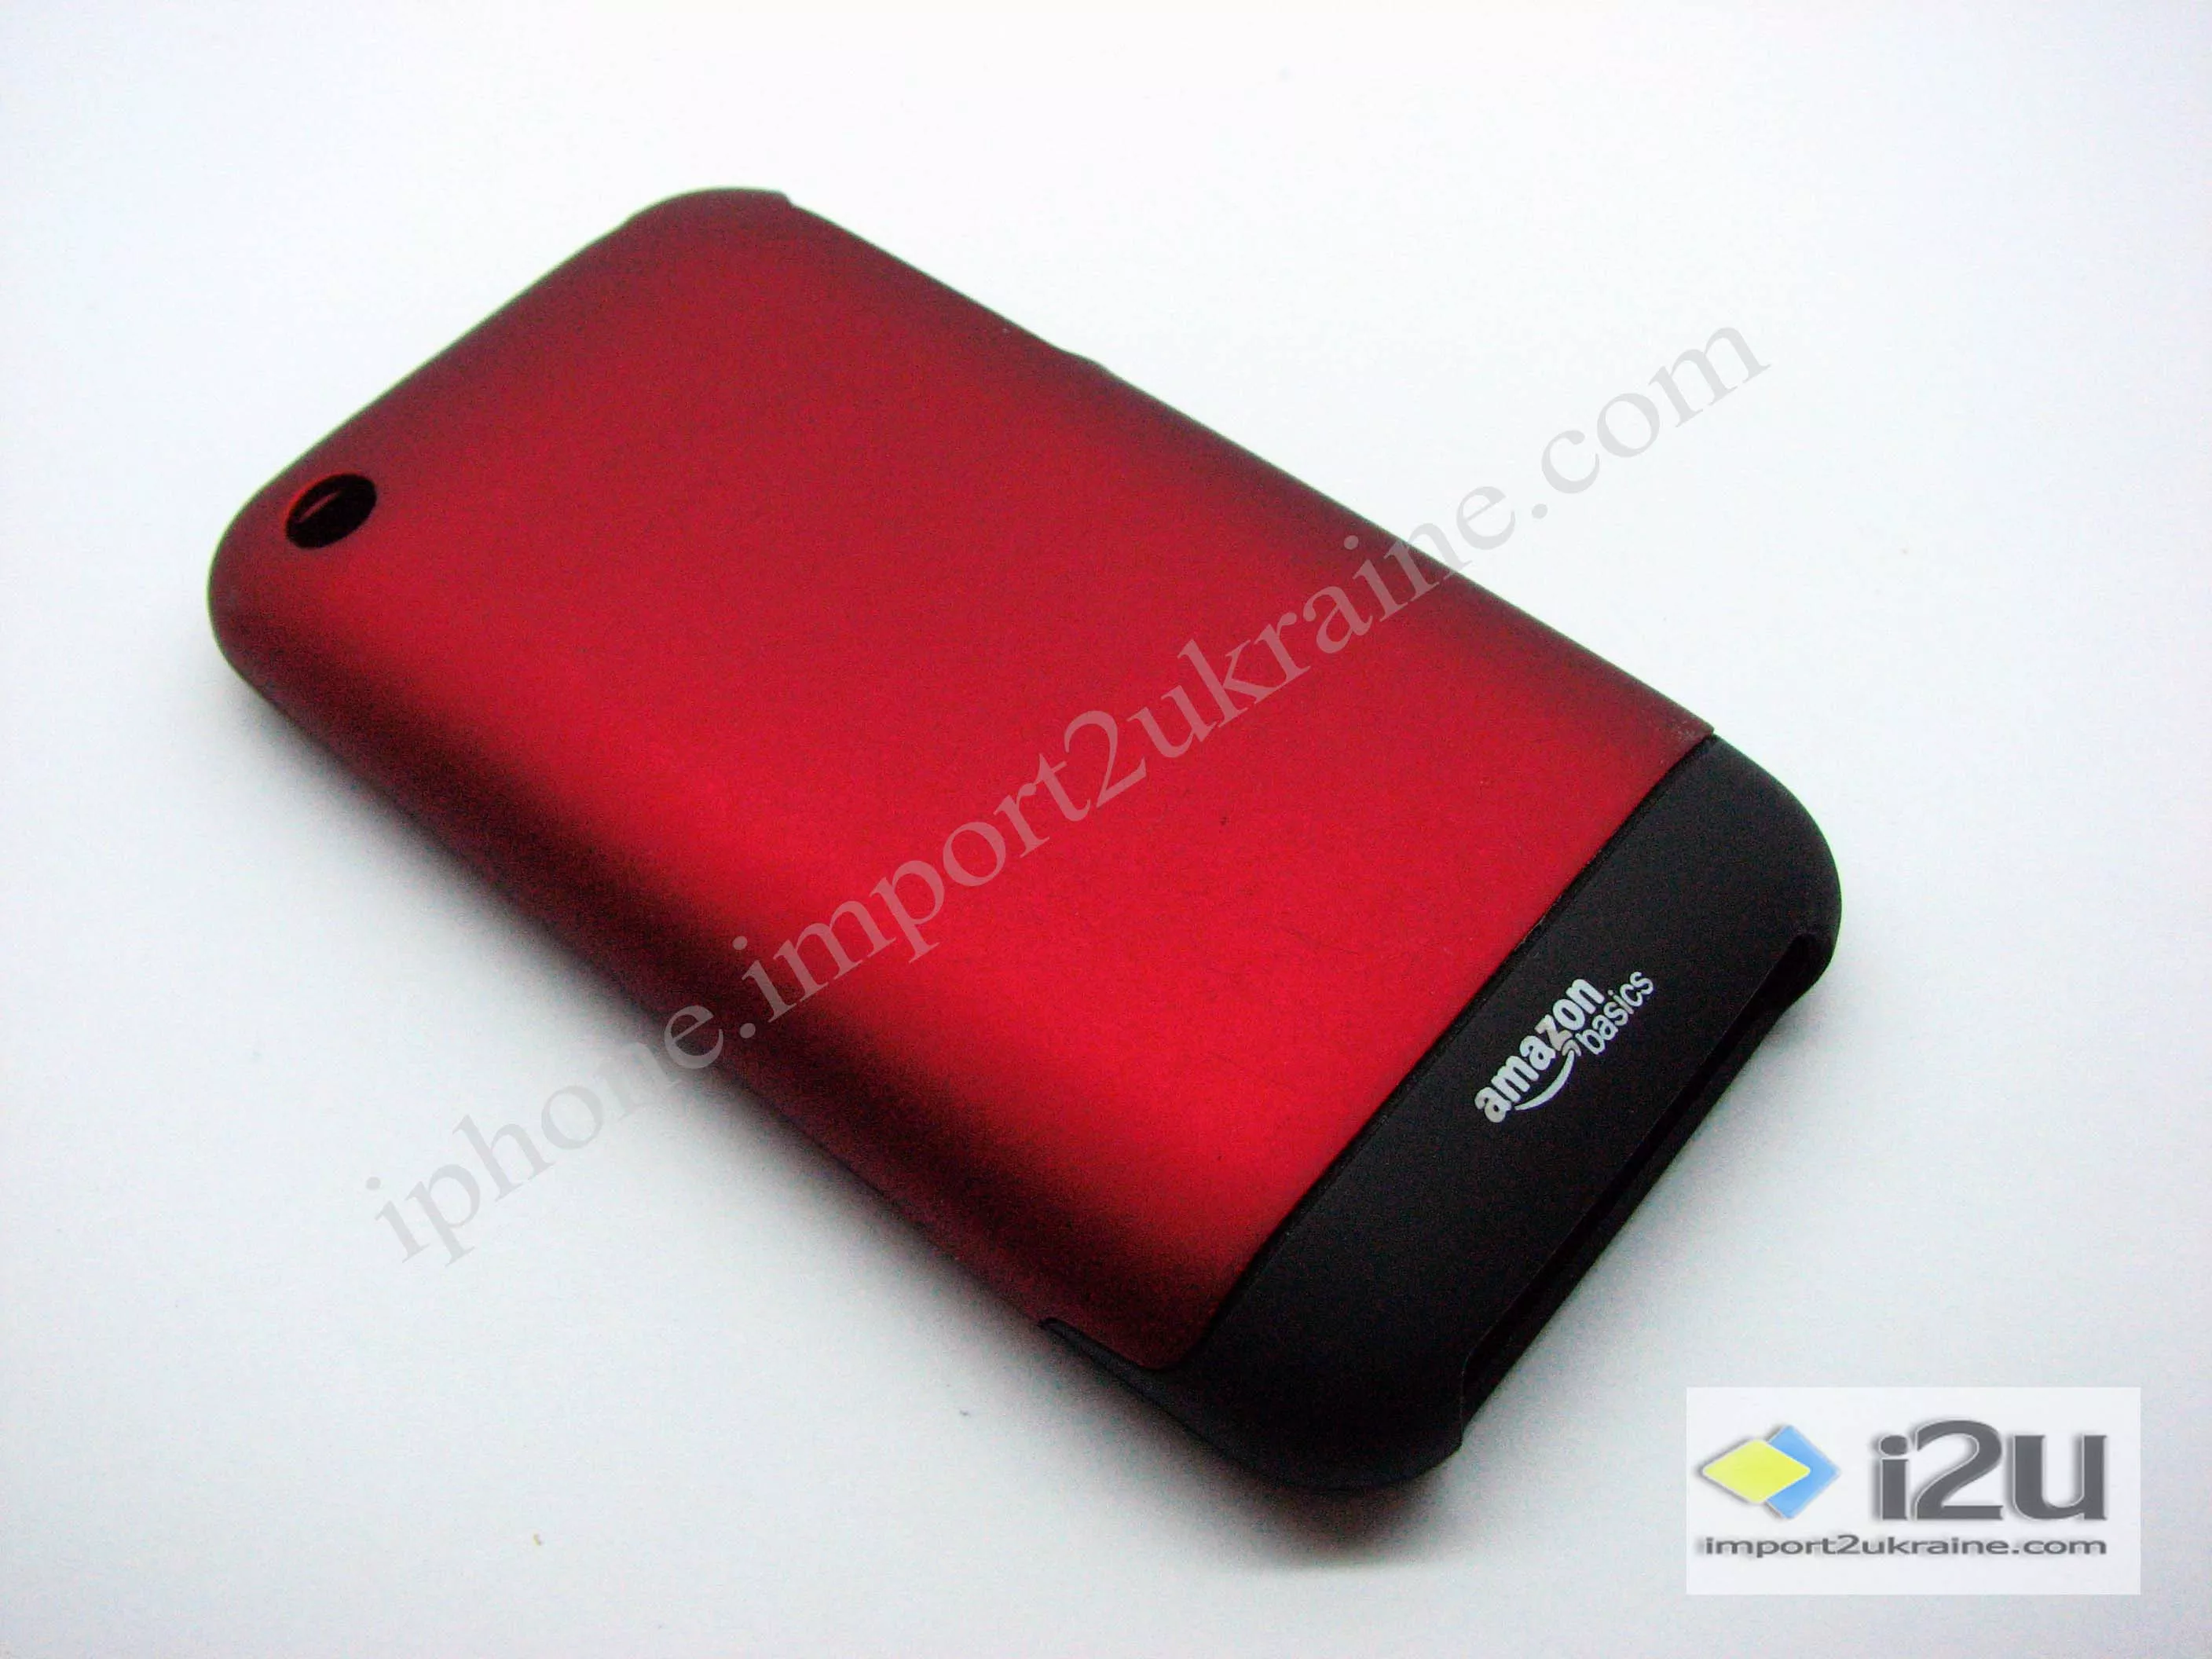 Красный насыщенный цвет с черной заглушкой внизу iPhone.